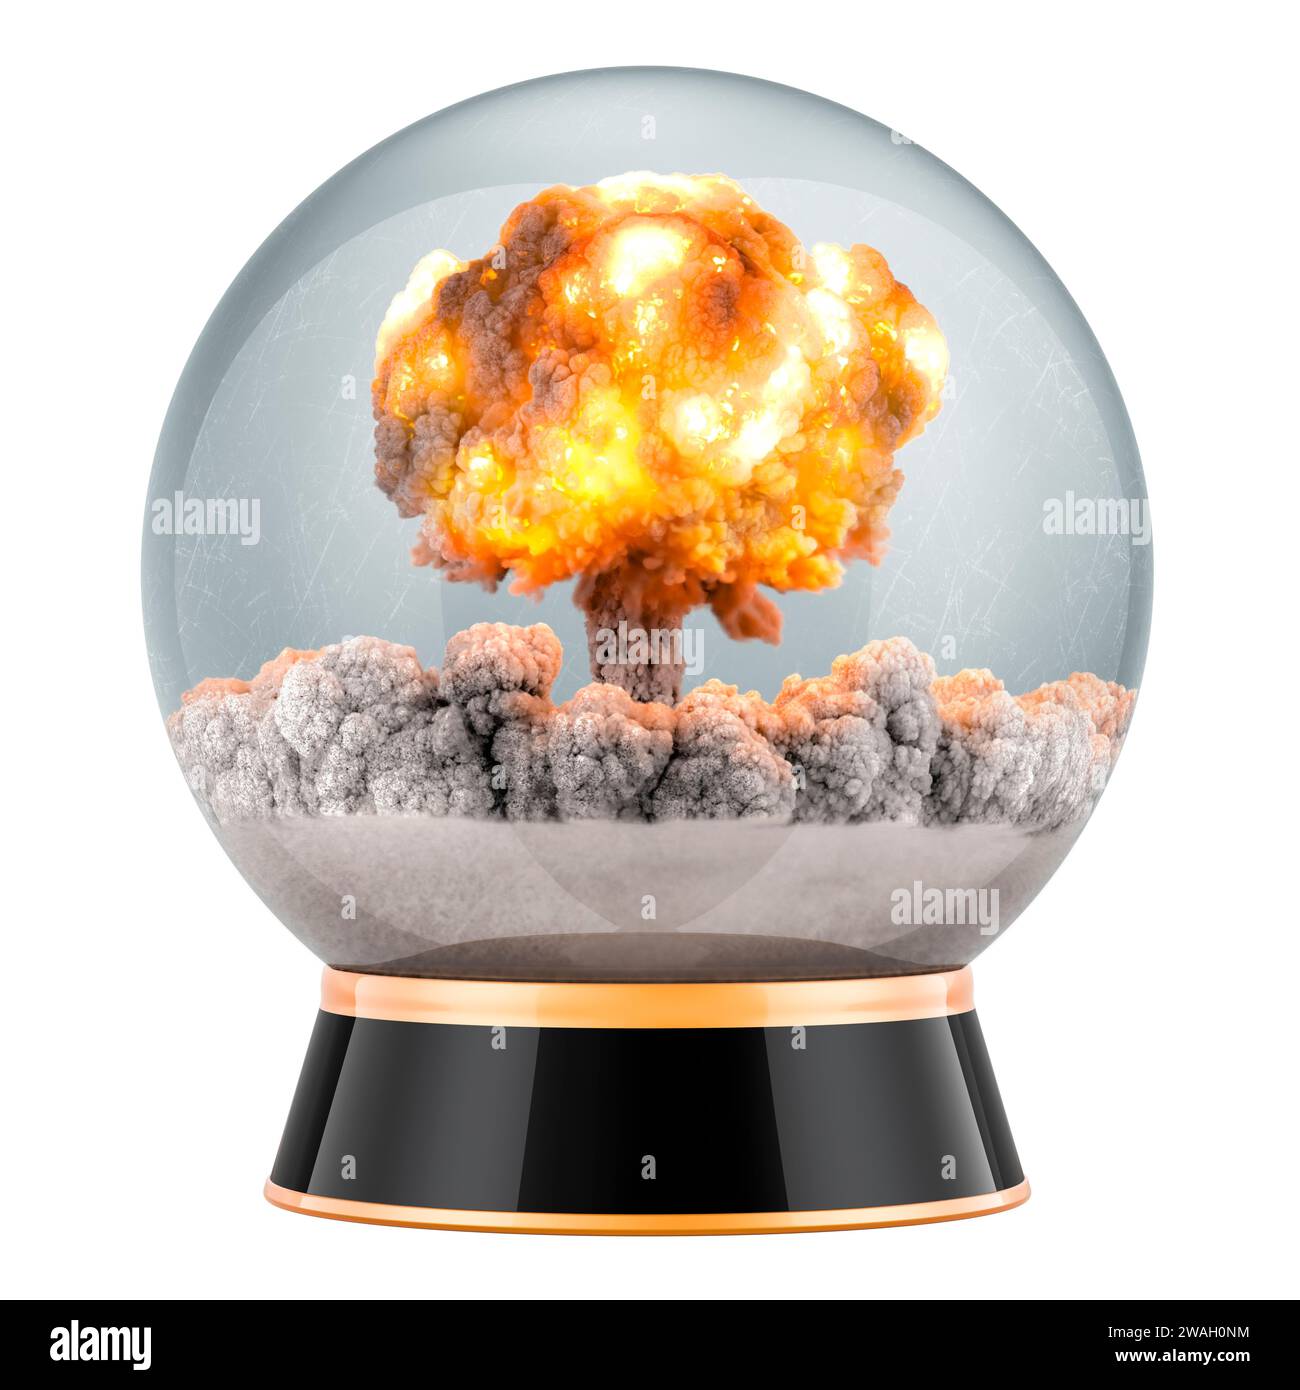 Clear Crystal Ball con l'esplosione della bomba atomica. Apocalypse Prediction Prophecy, End of the World, Concept. Rendering 3D isolato su sfondo bianco Foto Stock